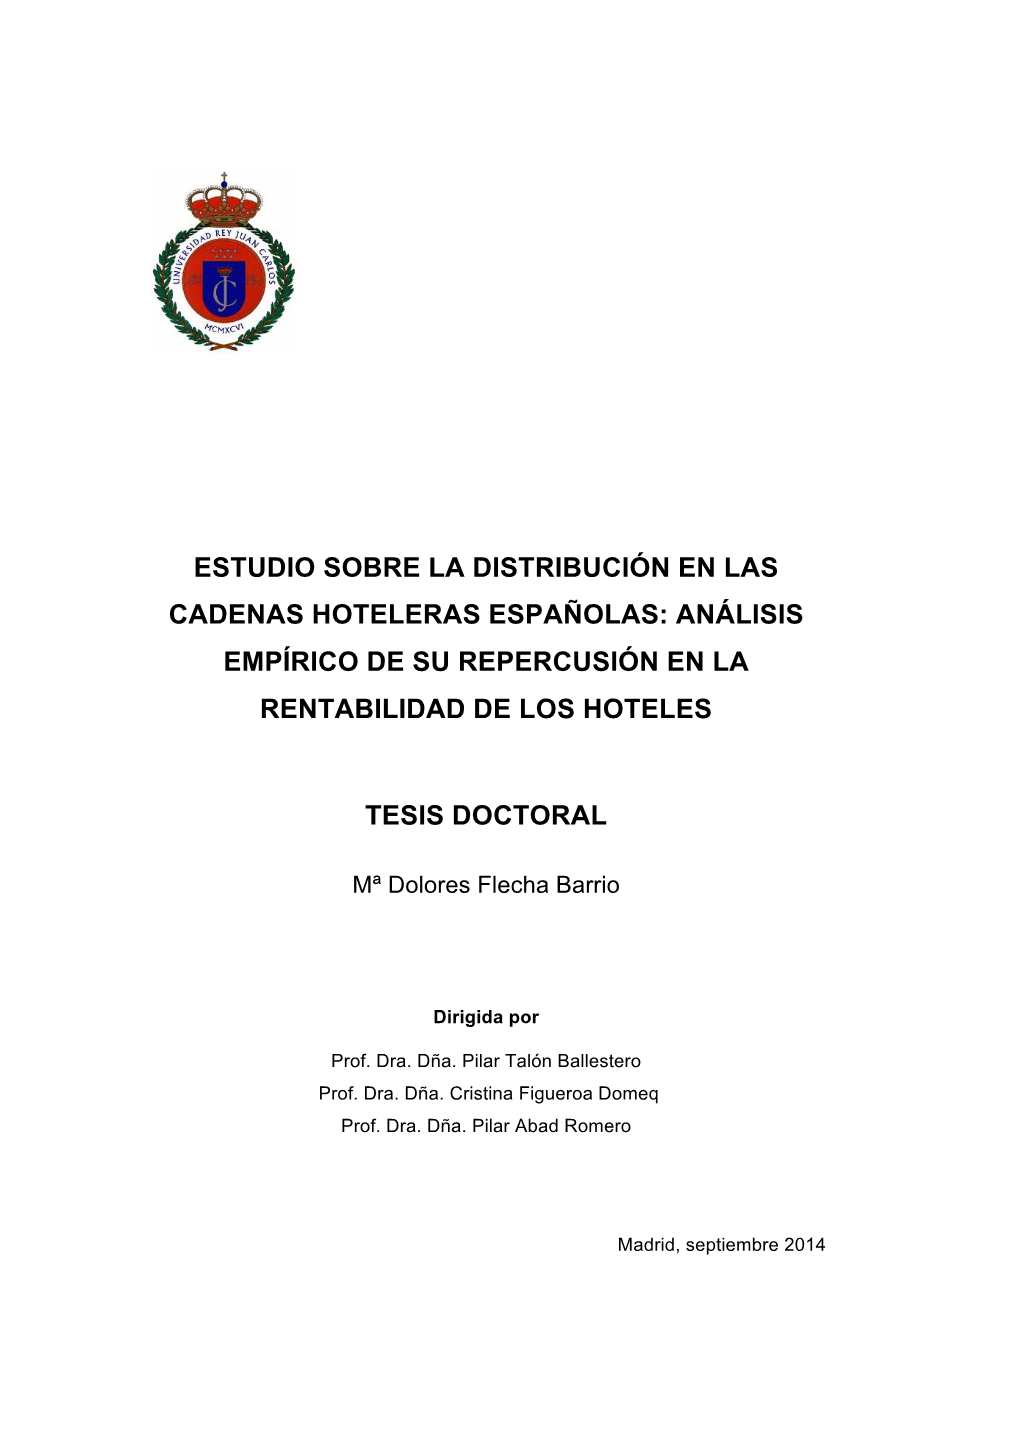 Estudio Sobre La Distribución En Las Cadenas Hoteleras Españolas: Análisis Empírico De Su Repercusión En La Rentabilidad De Los Hoteles